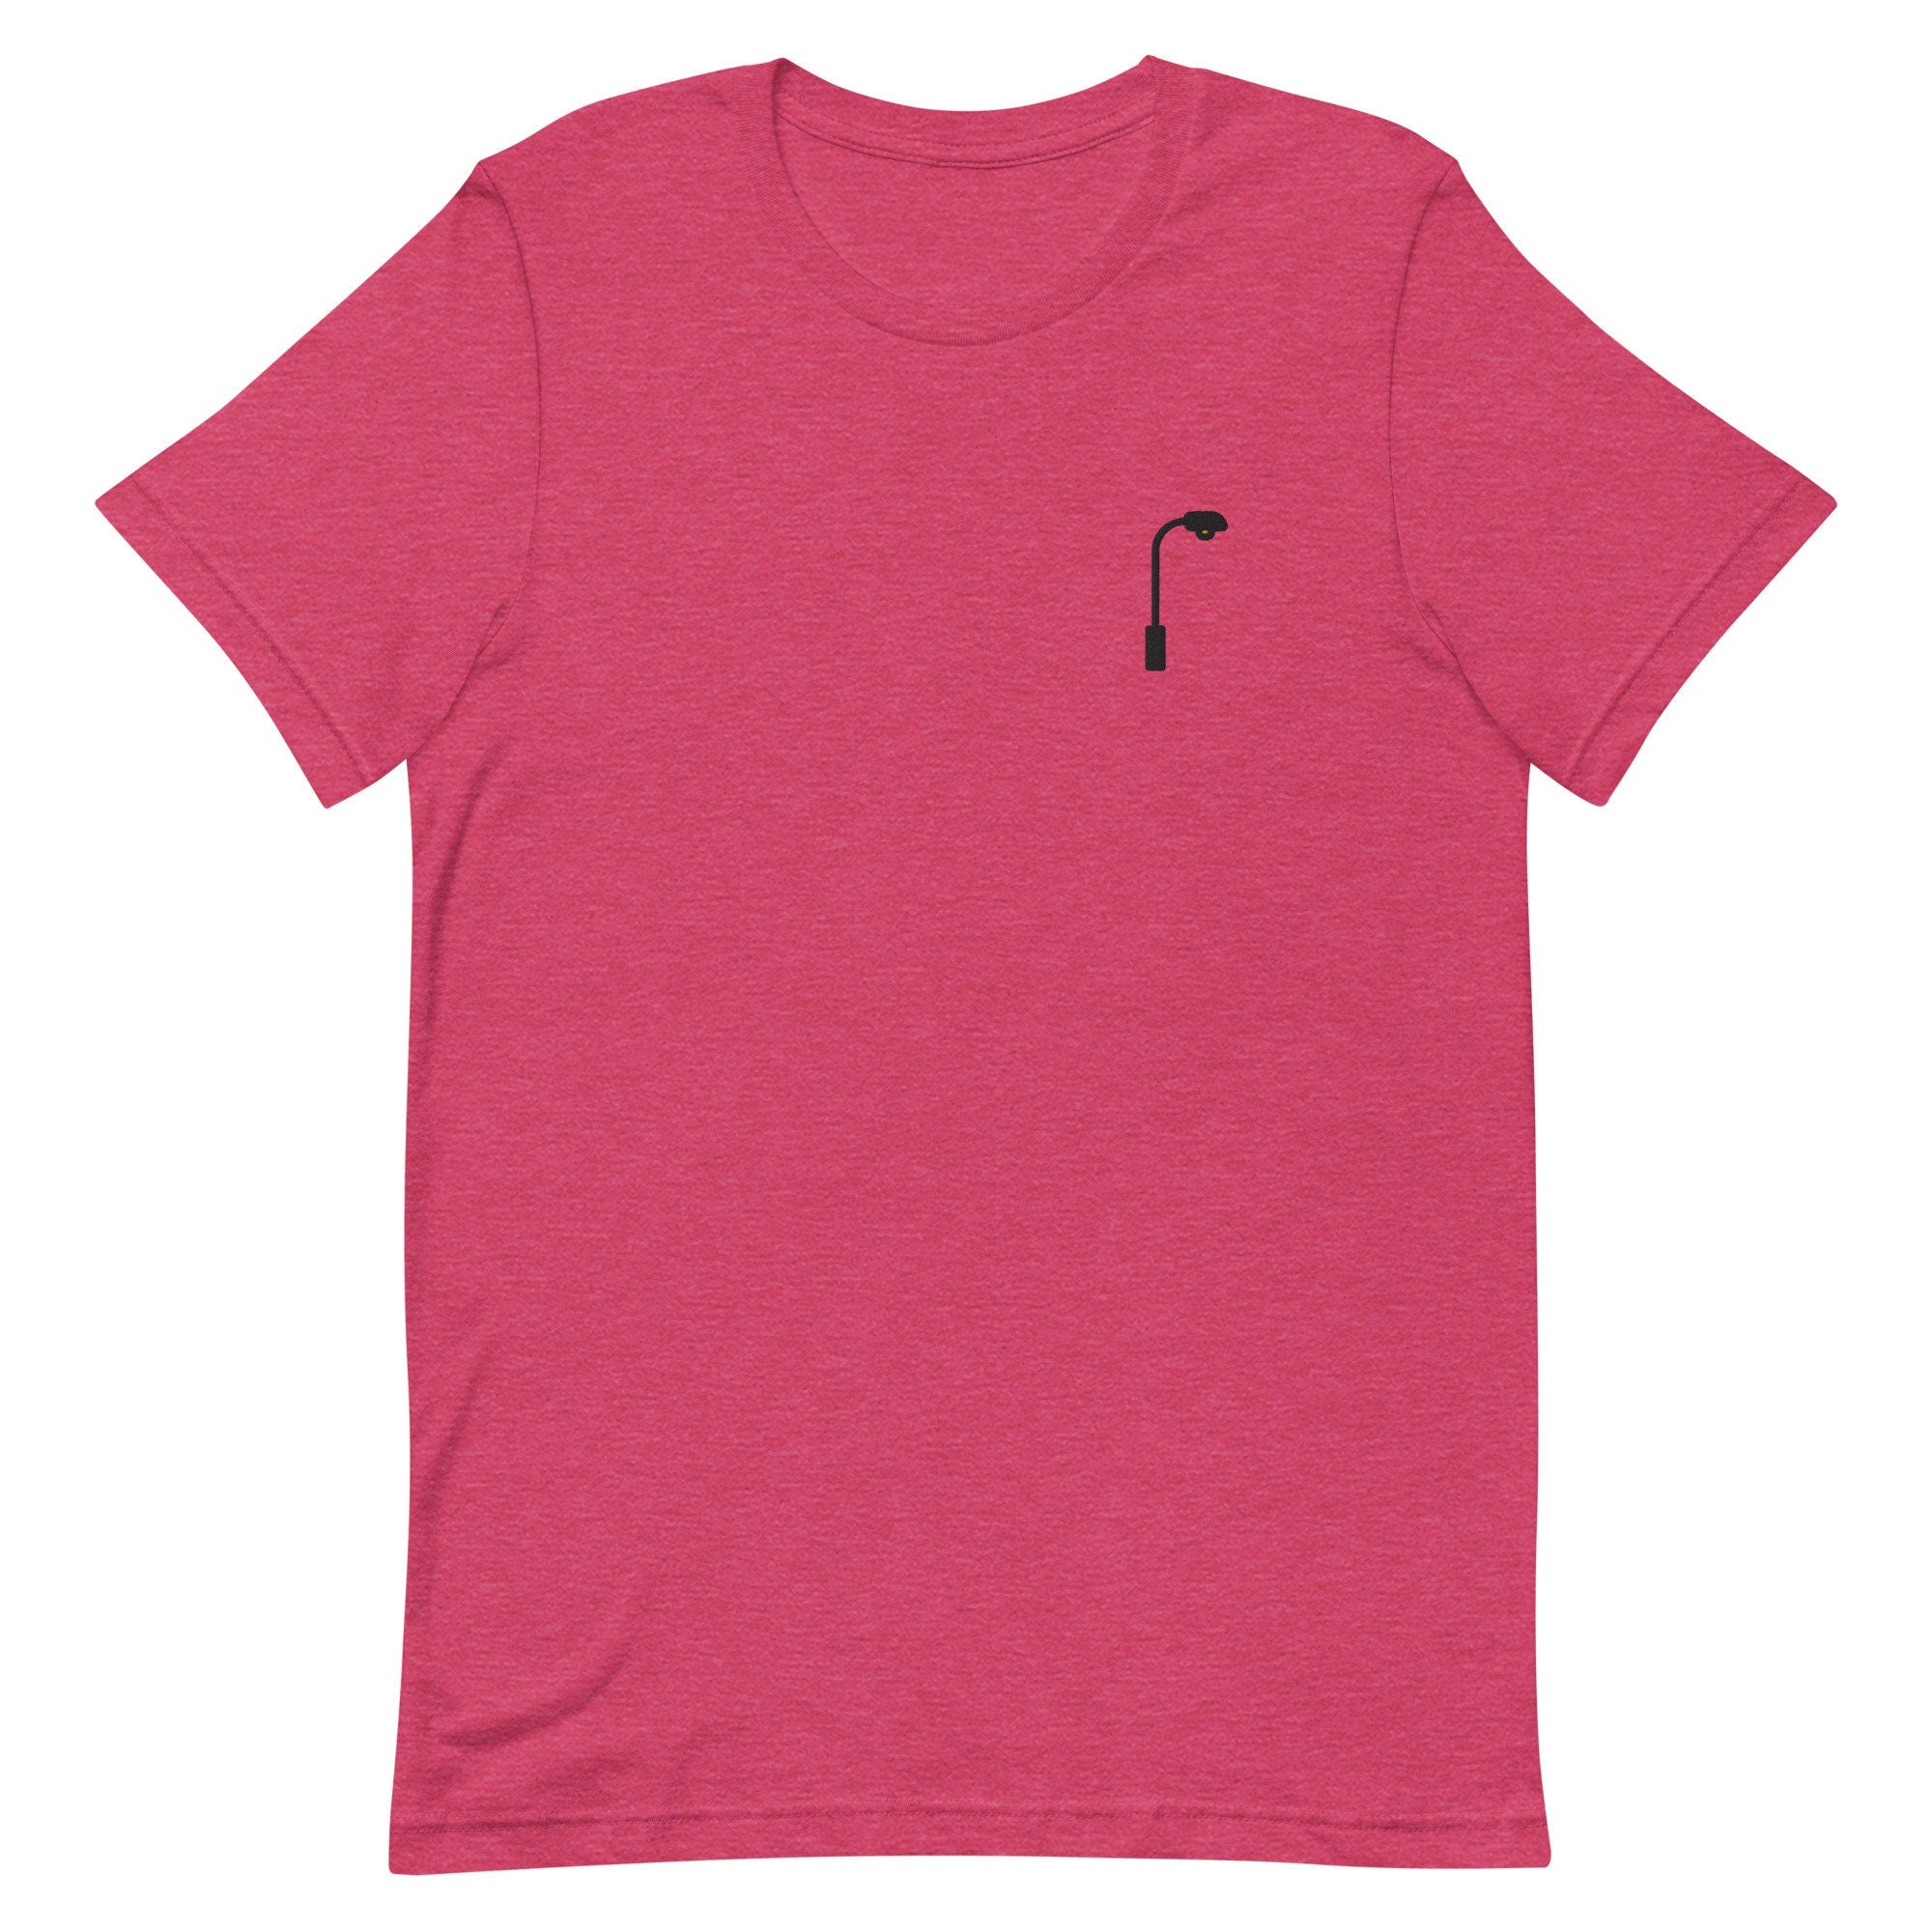 Streetlamp Premium Men's T-Shirt, Embroidered Men's T-Shirt Gift for Boyfriend, Men's Short Sleeve Shirt - Multiple Colors